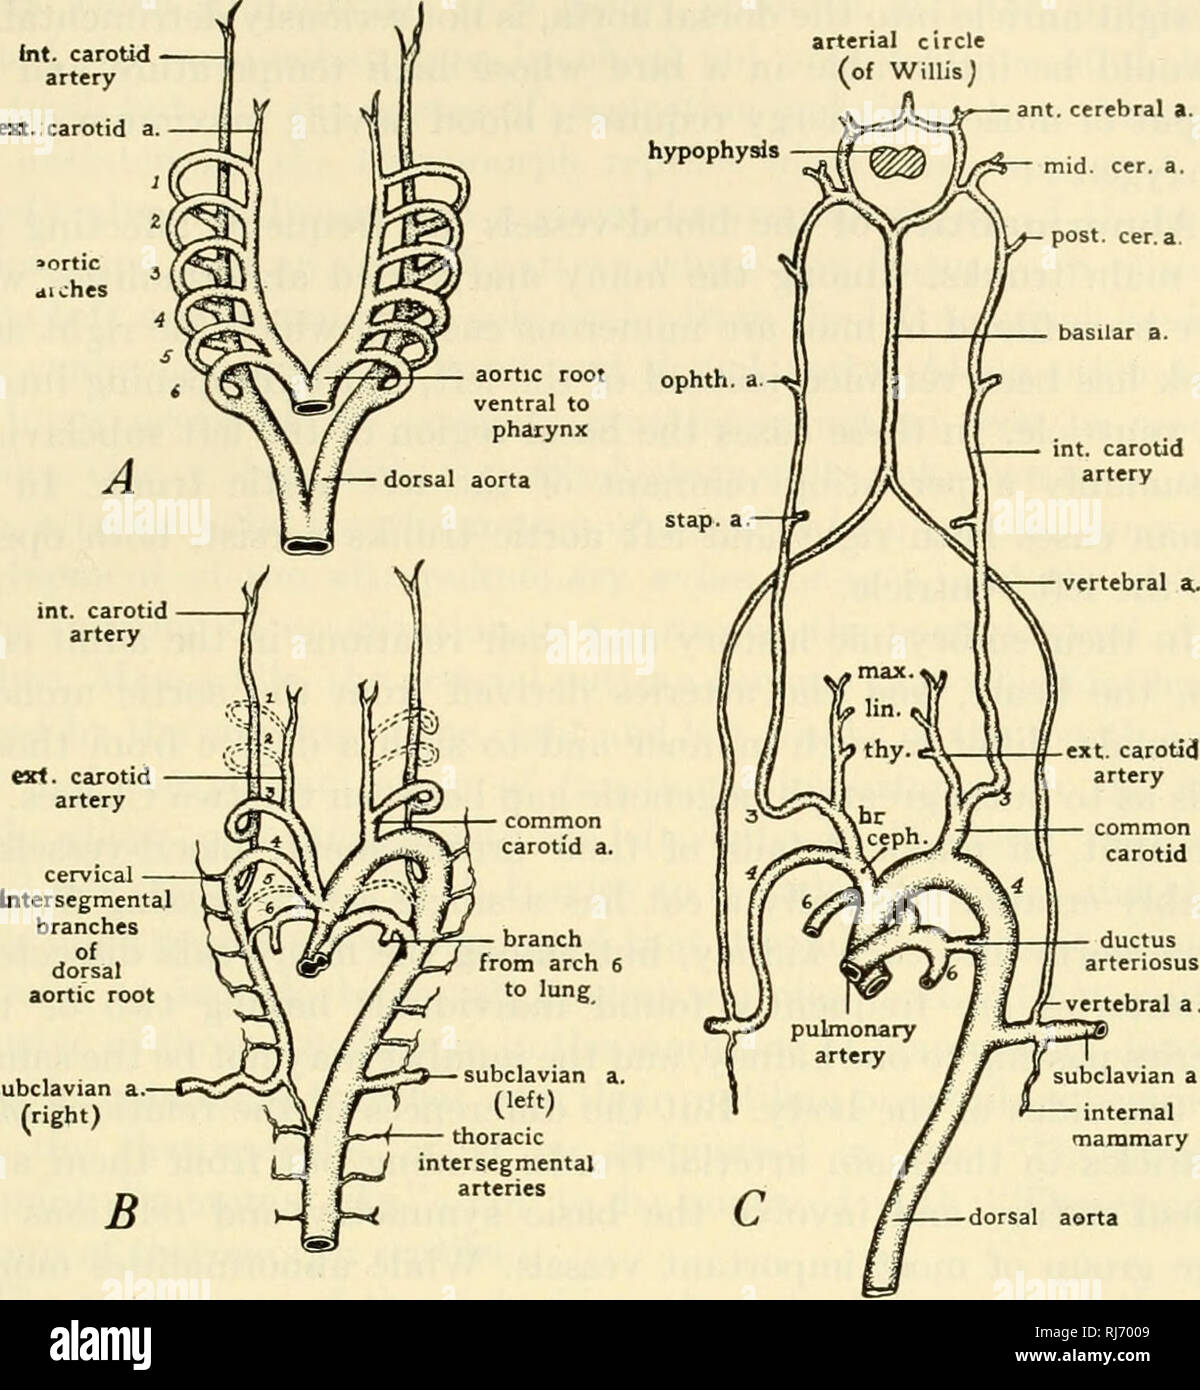 . La les chordés. Chordés. Mammalia : Systèmes viscérale 627 cercle artériel (d'Willisj. Un sous-clavière aorte dorsale mammaire interne Fig. 477. Diagrammes illustrant les changements qui se produisent dans les arcs aortiques des embryons de mammifères. (A) plan de masse de l'ensemble complet des arcs aortiques. (B) tôt dans la modification d'arches. (C) Dérivés des arcs aortiques, ceph (Fr..) ; l'artère brachiocéphalique (cer. a.) ; l'artère cérébrale (lin.) ; l'artère linguale (max.) de l'artère maxillaire ; (solution ophtalmique. a.) ; l'artère ophtalmique (stap. a.) stapedial ; artère (artère thyroïdienne). ton. (Adapté de plusieurs sources. Courtoisie, Patten : & Banque D'Images